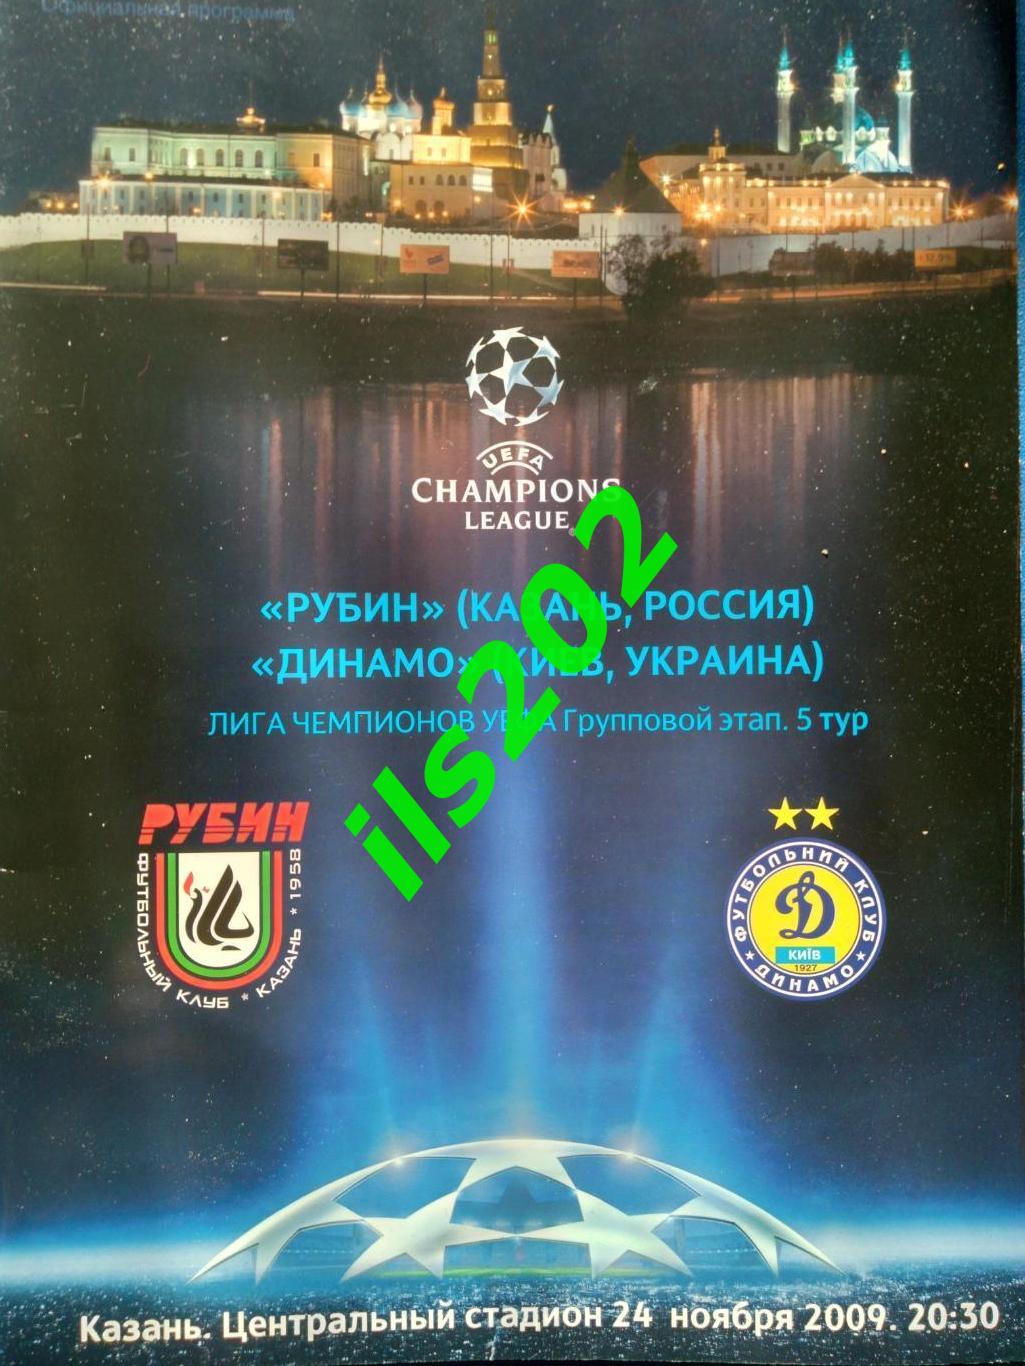 Рубин Казань - Динамо Киев Украина 2009 / 2010 лига чемпионов